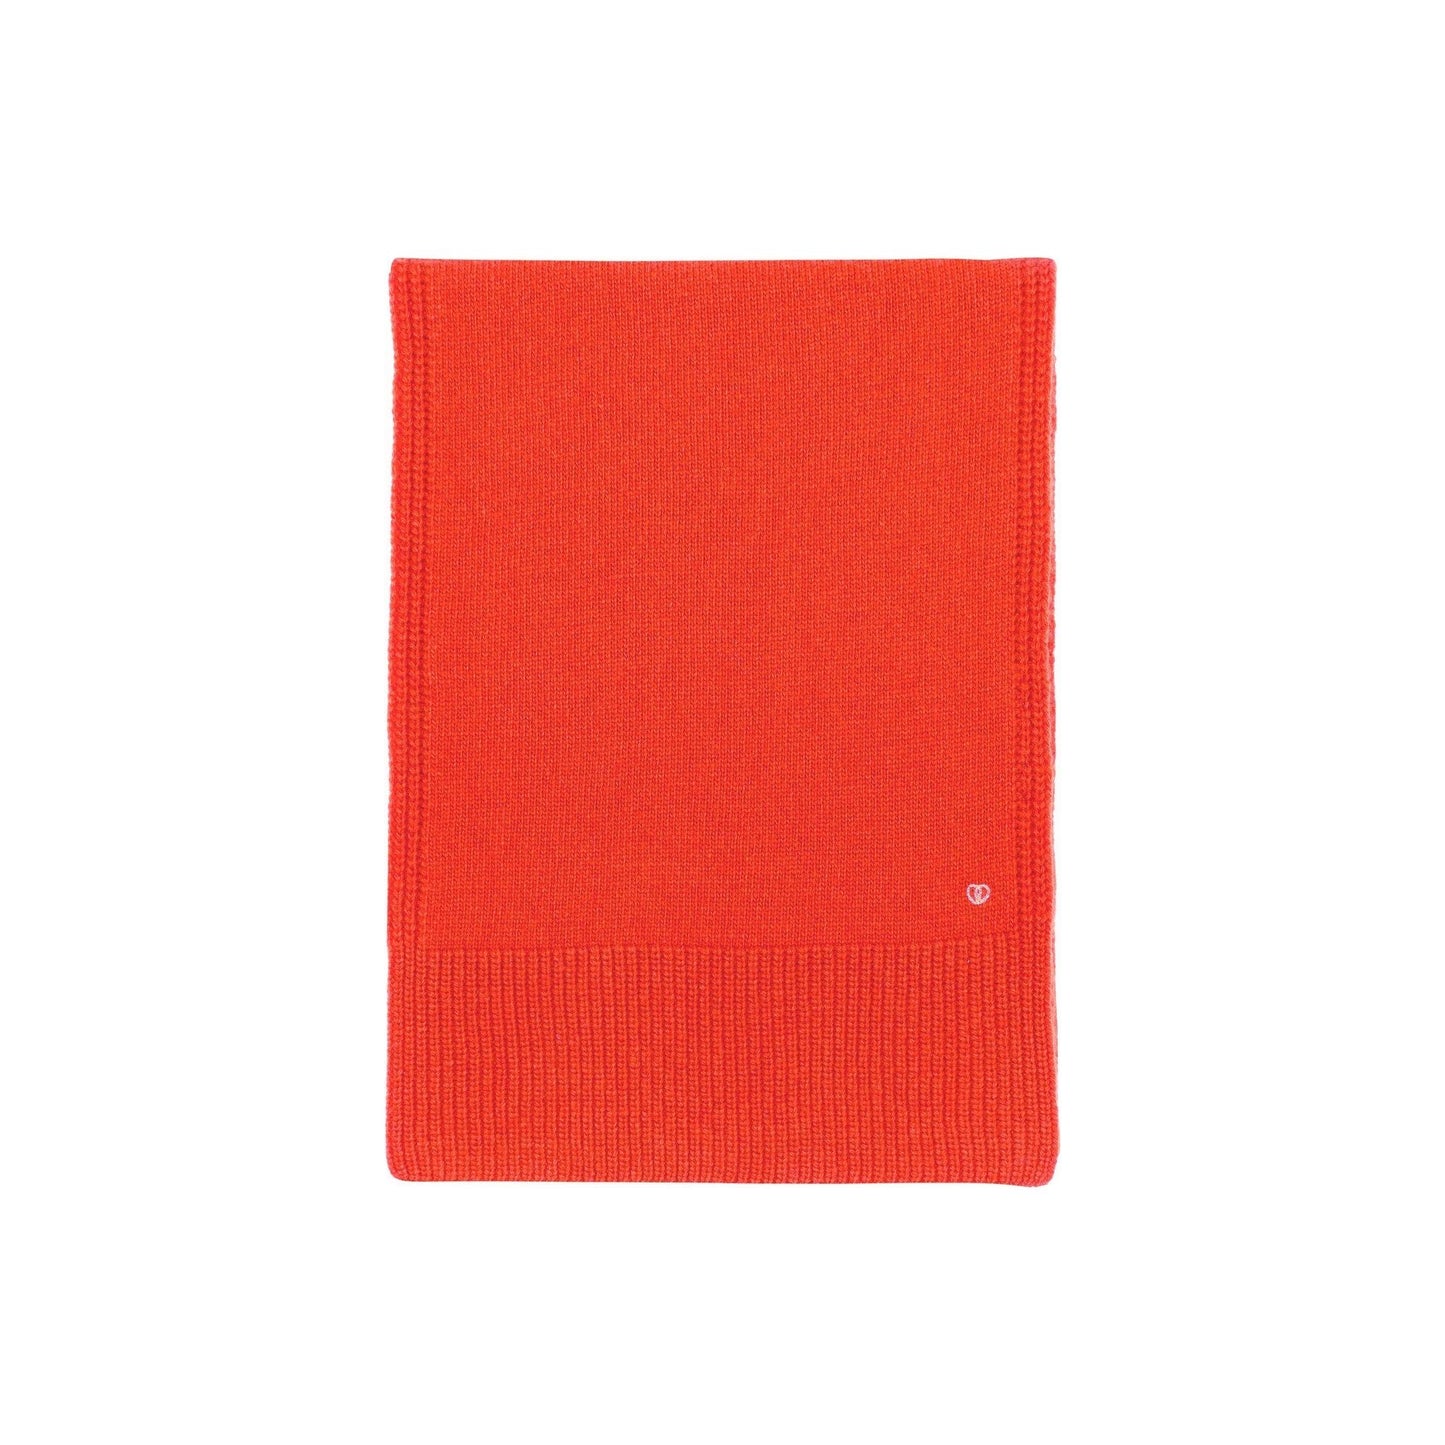 Seven Gauge fw23 Scarf Wool Scarf, Arancione